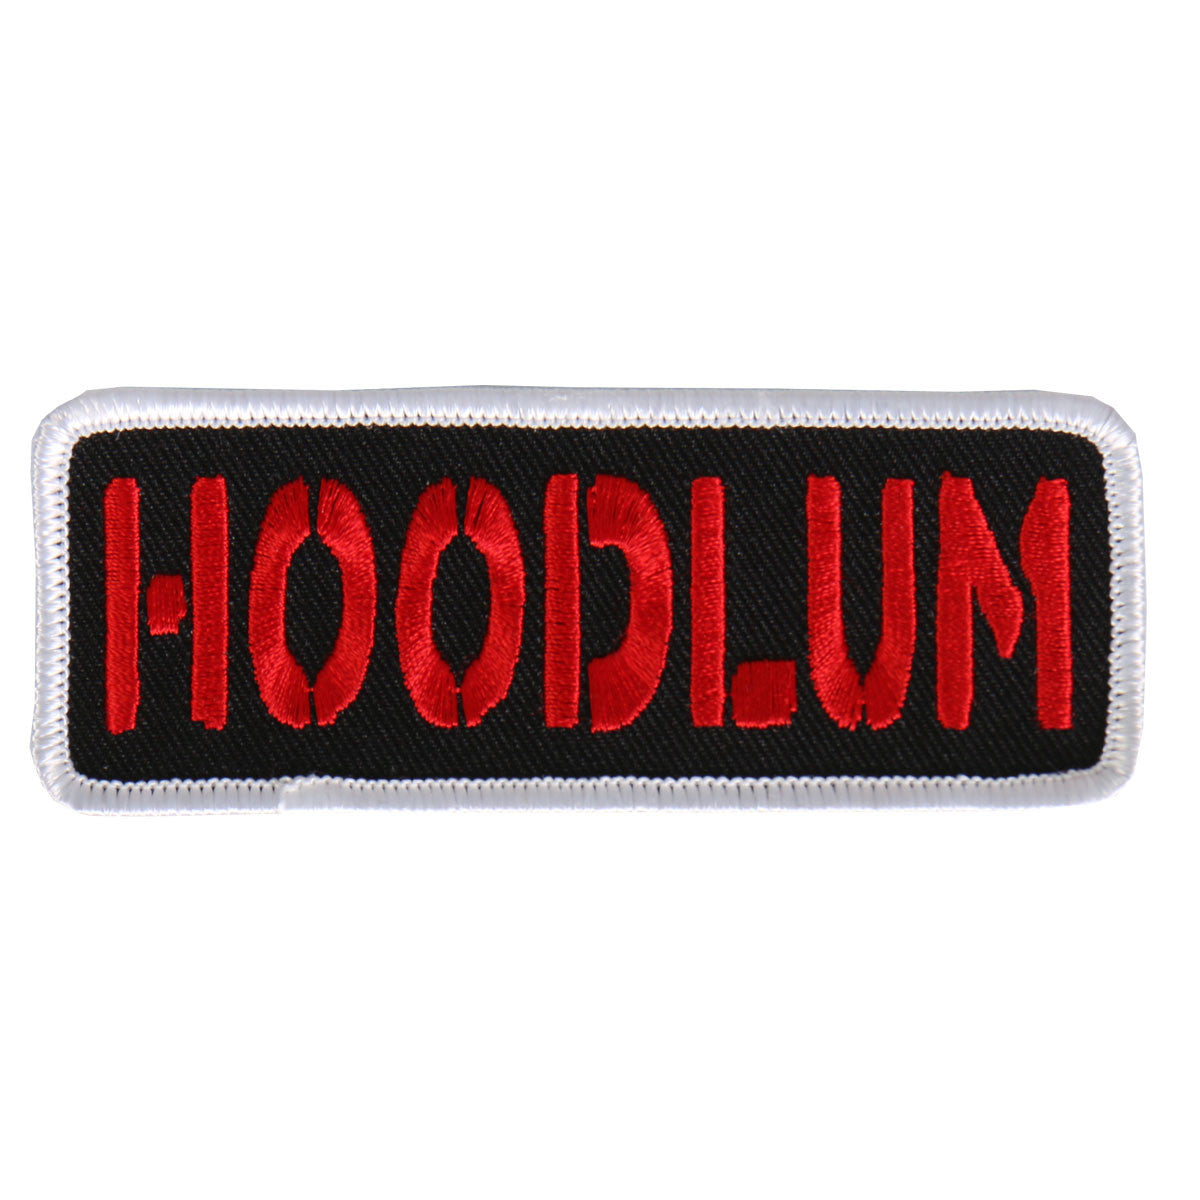 Hoodlum - Maine-Line Leather